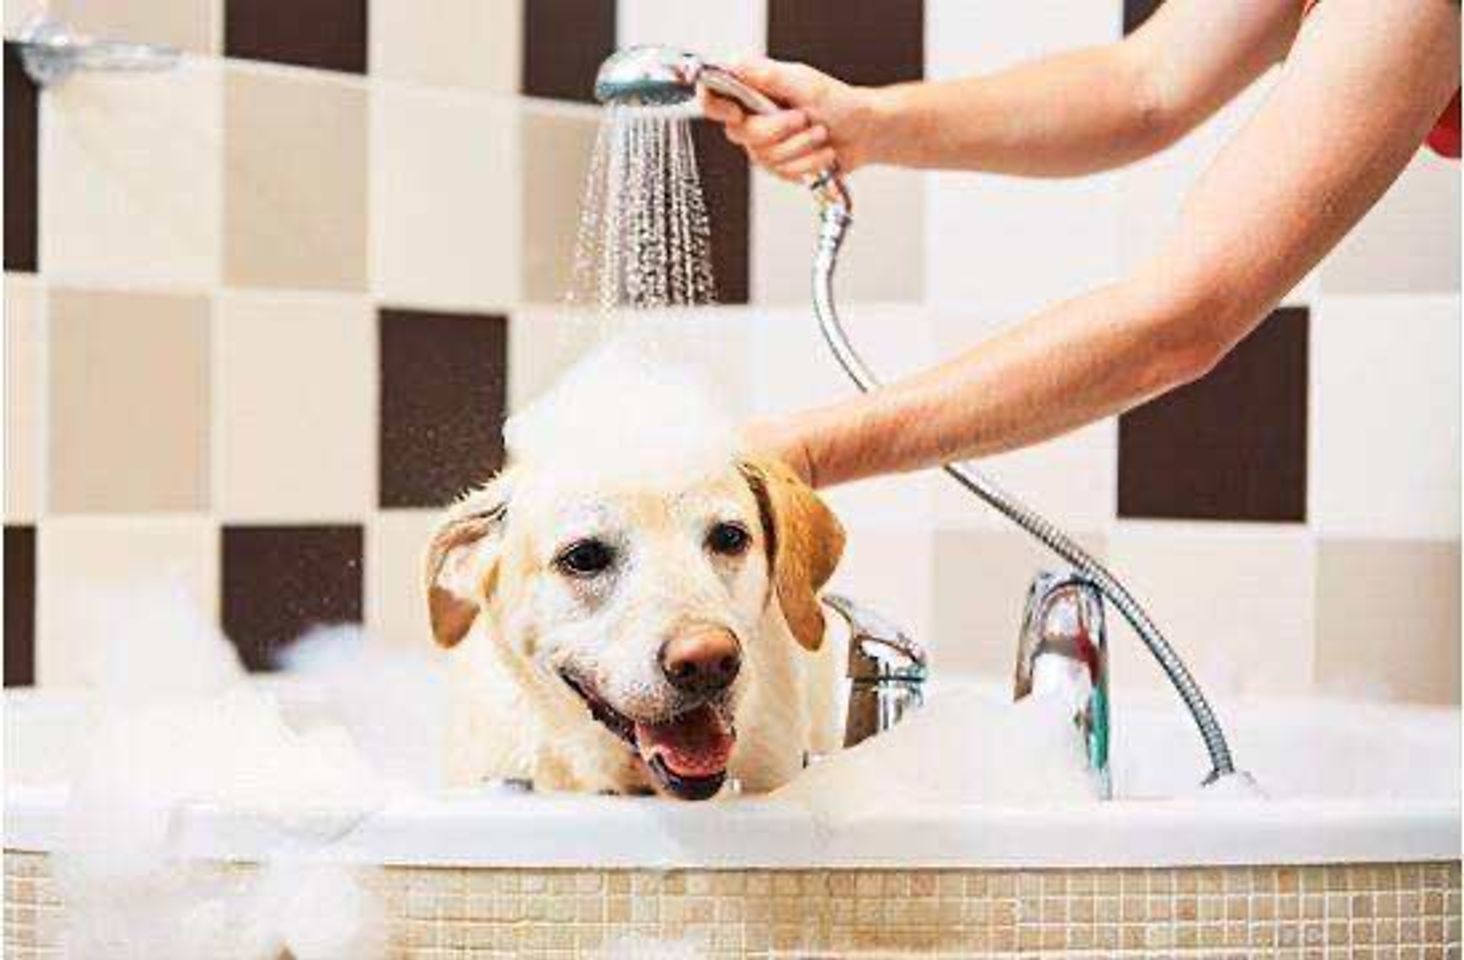 Voucher dịch vụ tắm cắt cạo lông cho chó từ 11kg tới 20kg 2